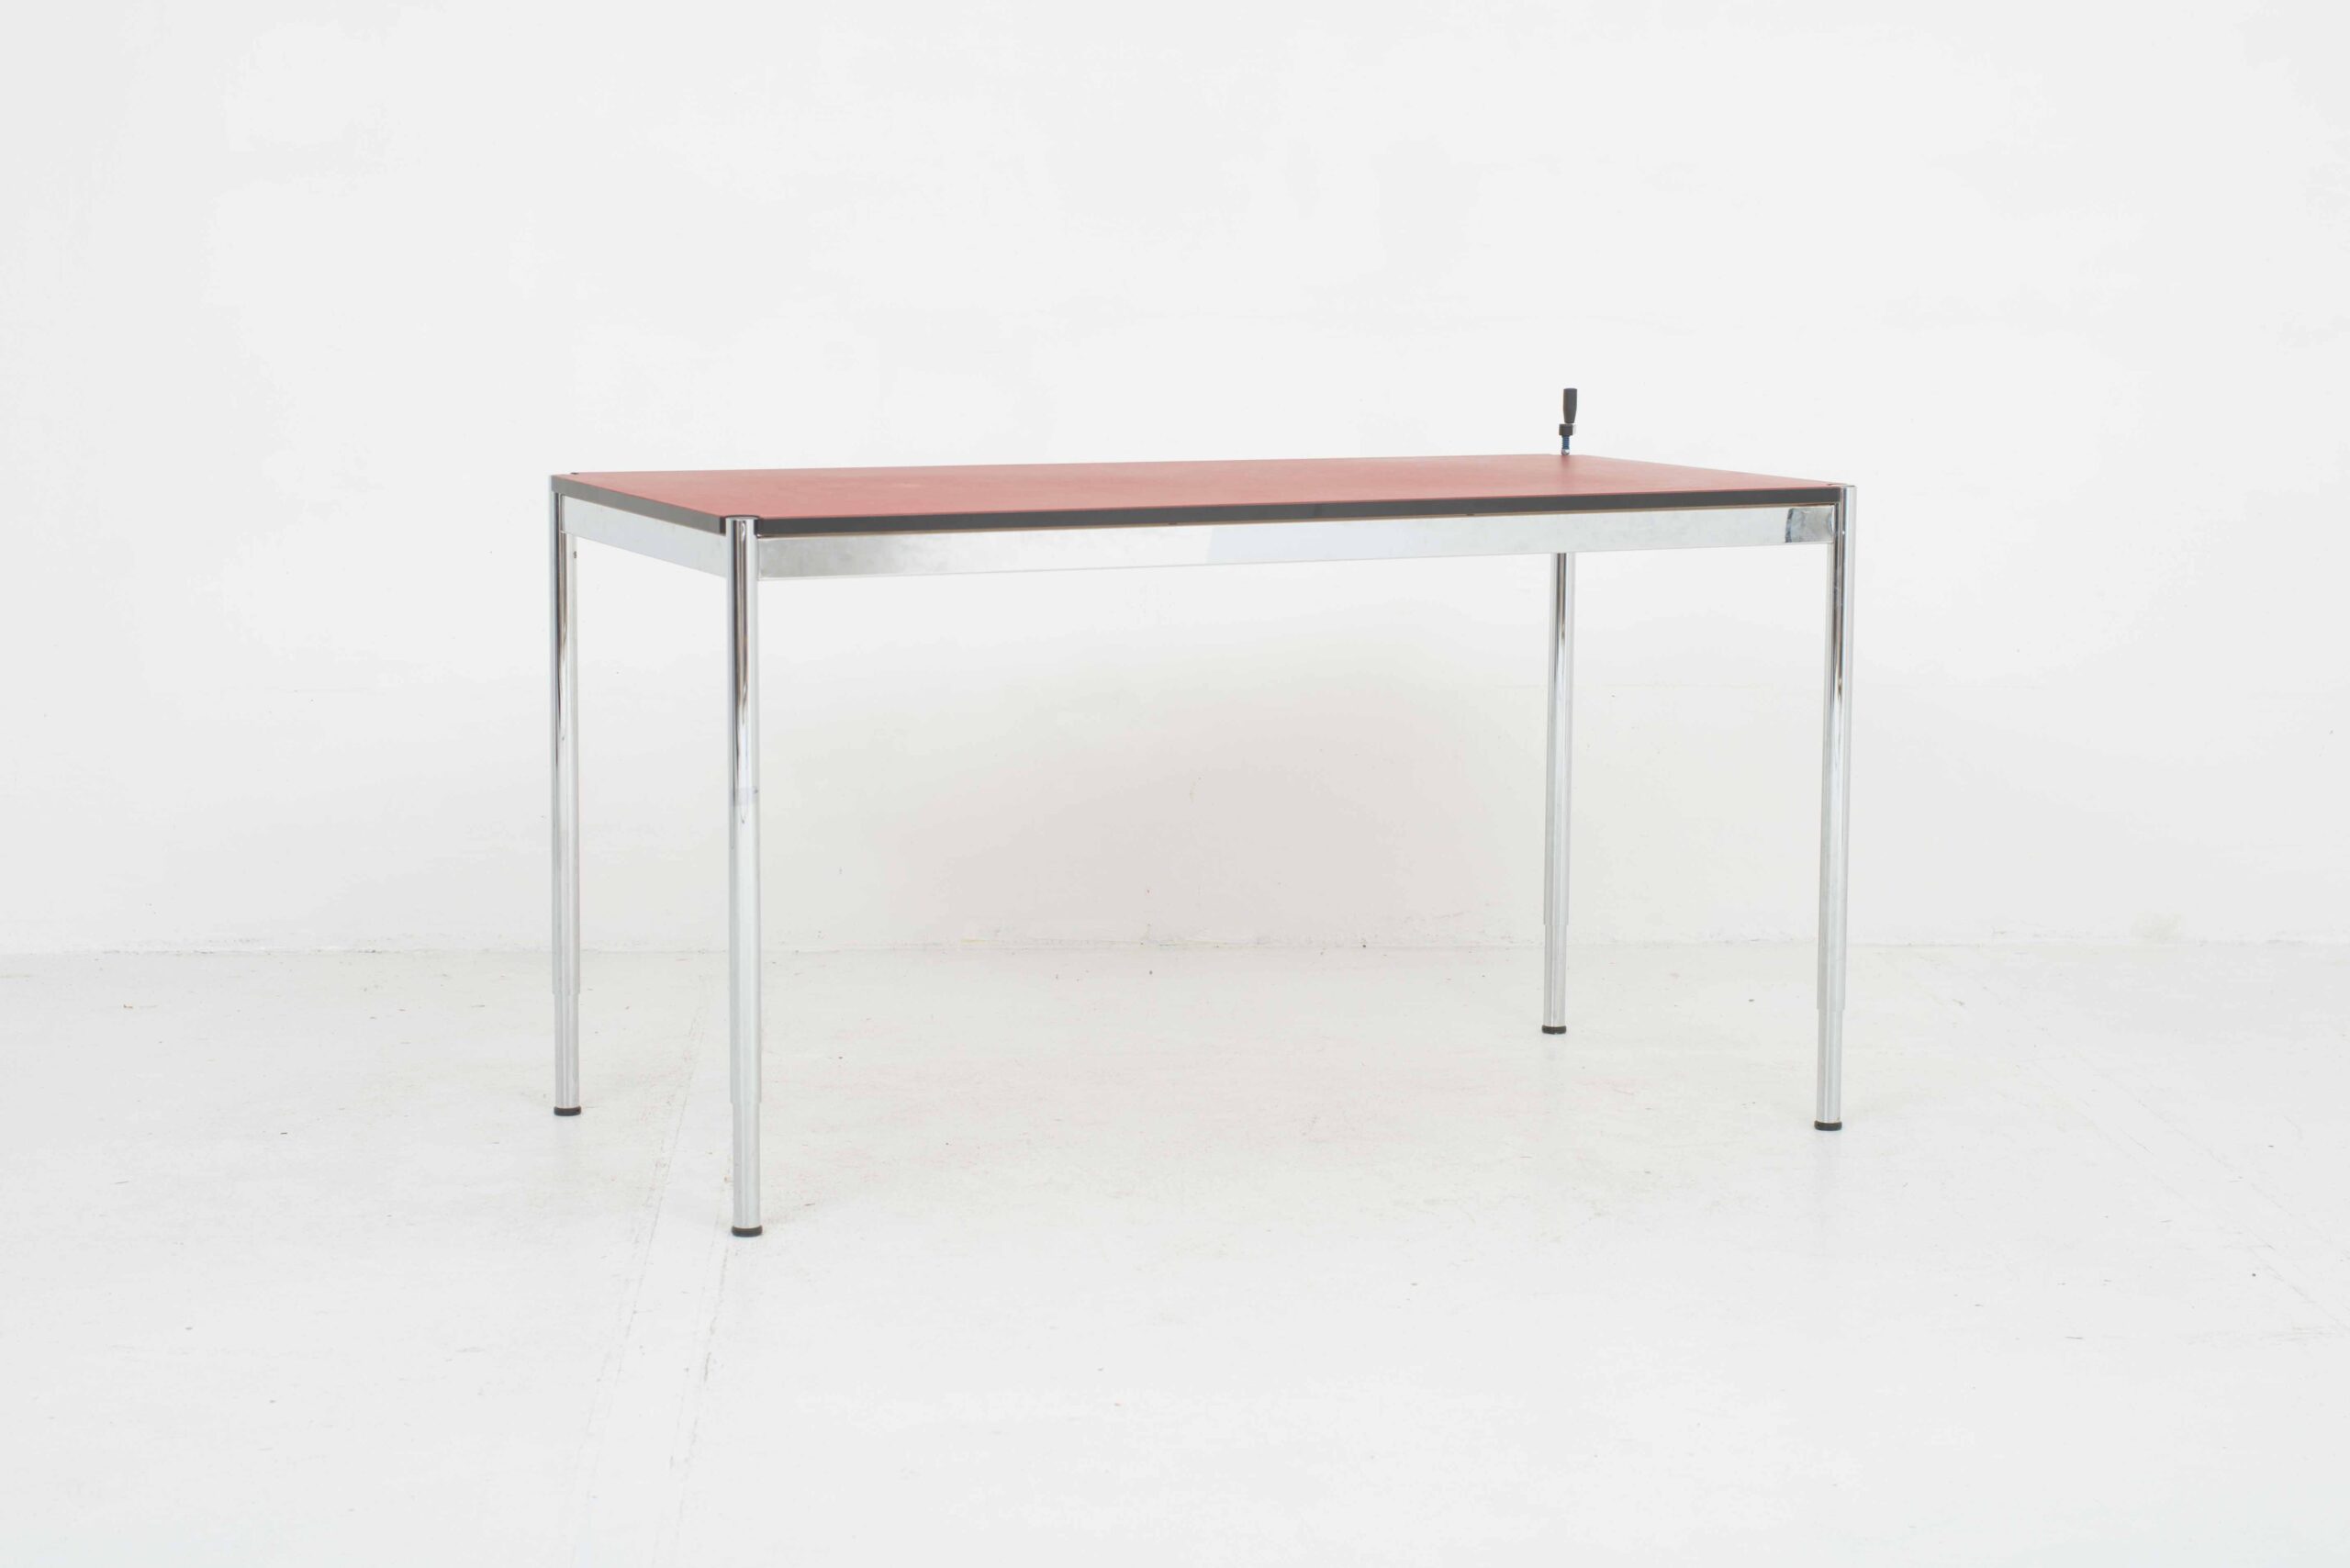 Höhenverstellbarer USM Schreibtisch in Linoleum rot-1